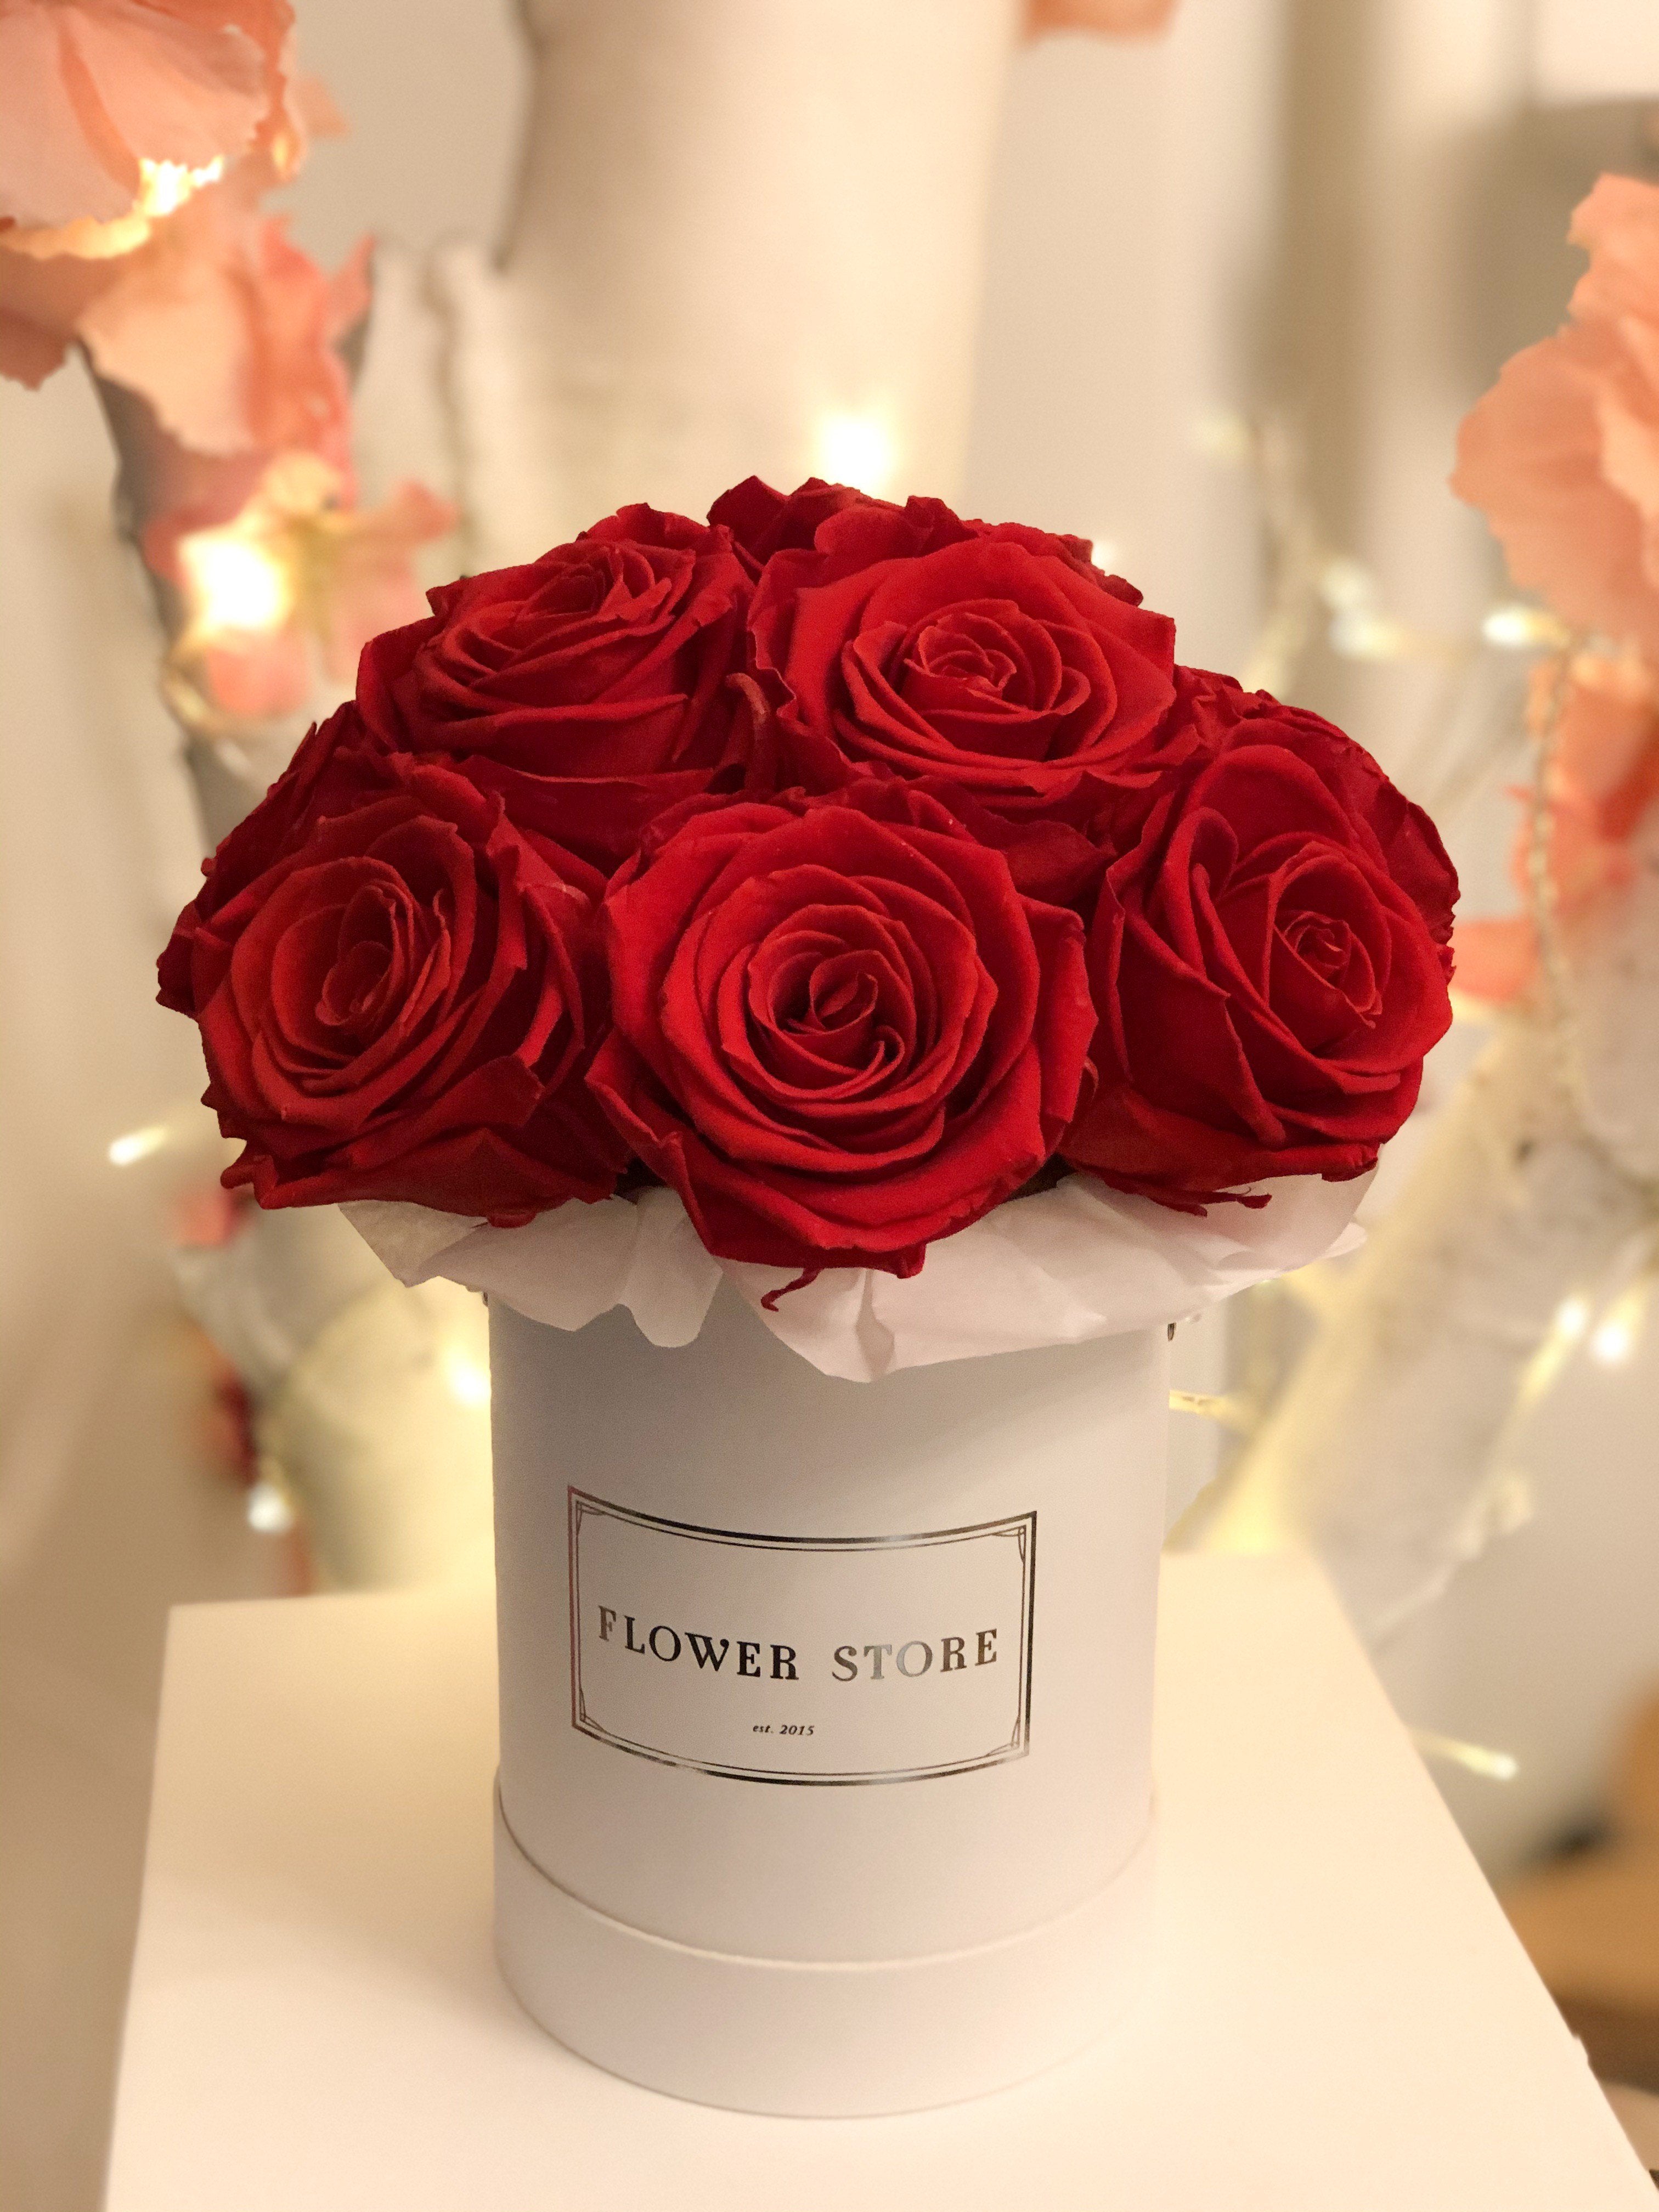 Маленькая белая коробочка с красными розами - живыми цветами.